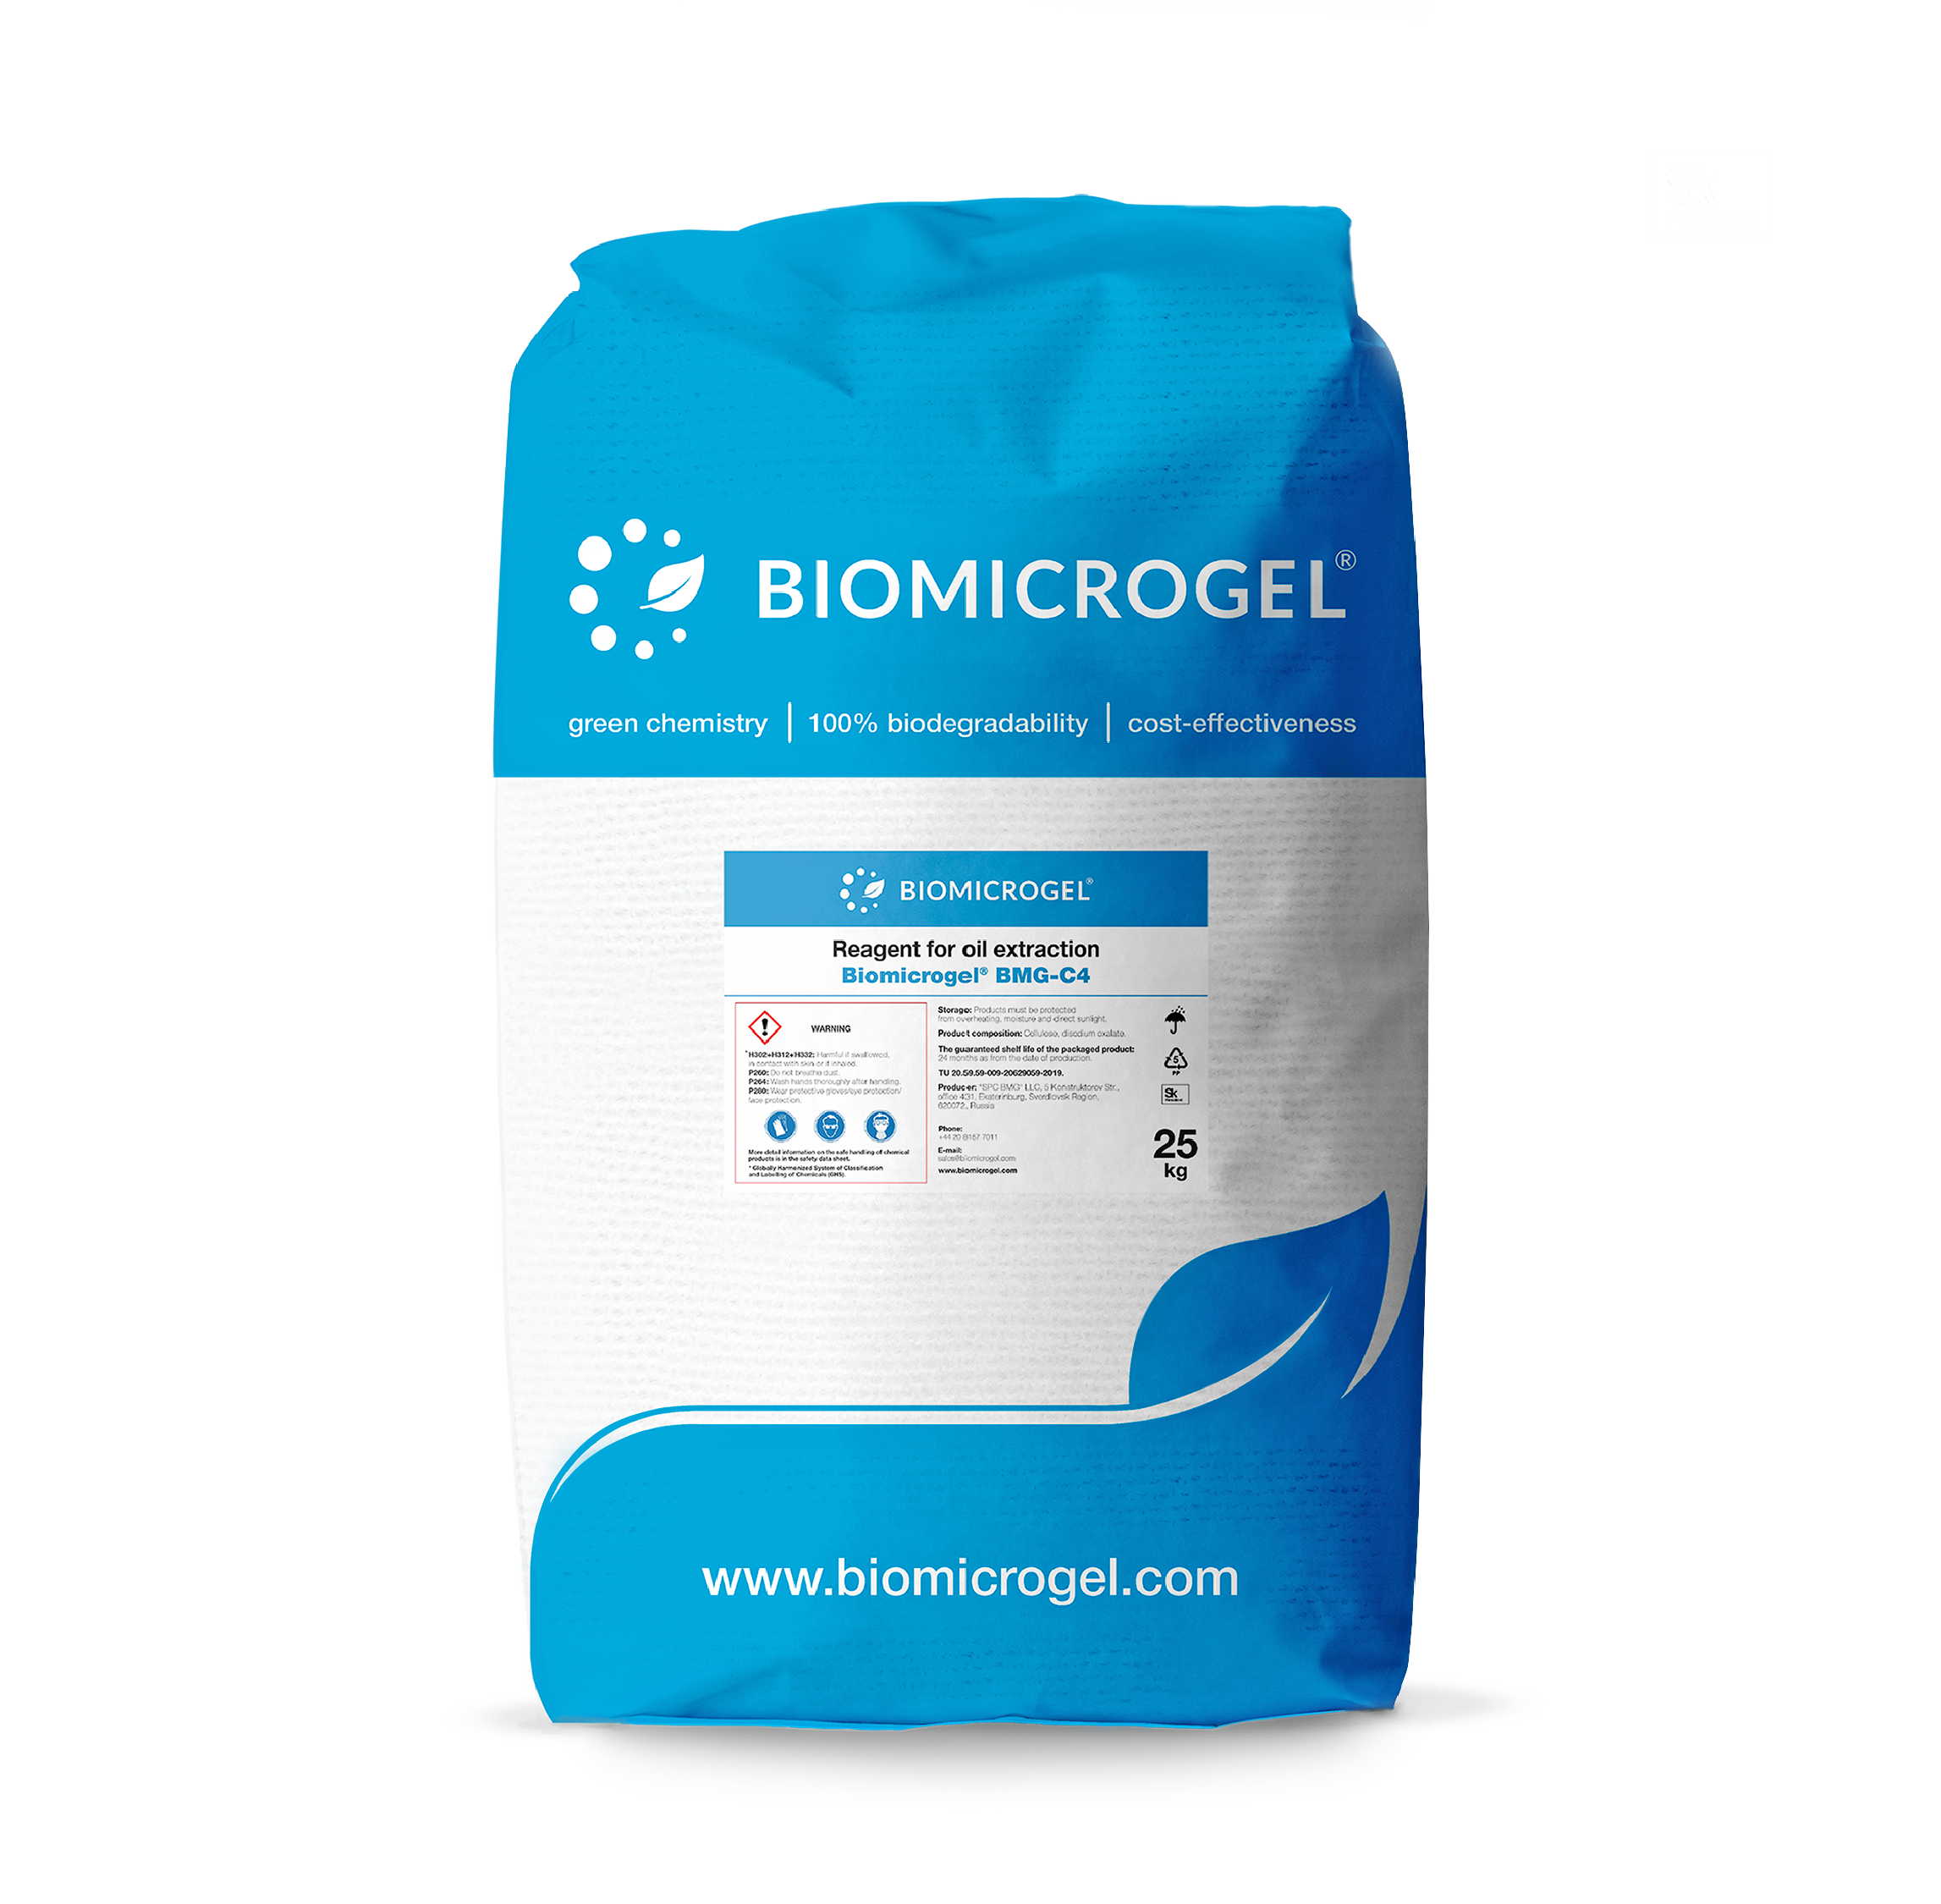 Reagen untuk ekstraksi minyak Biomicrogel<sup>®</sup> BMG-C4